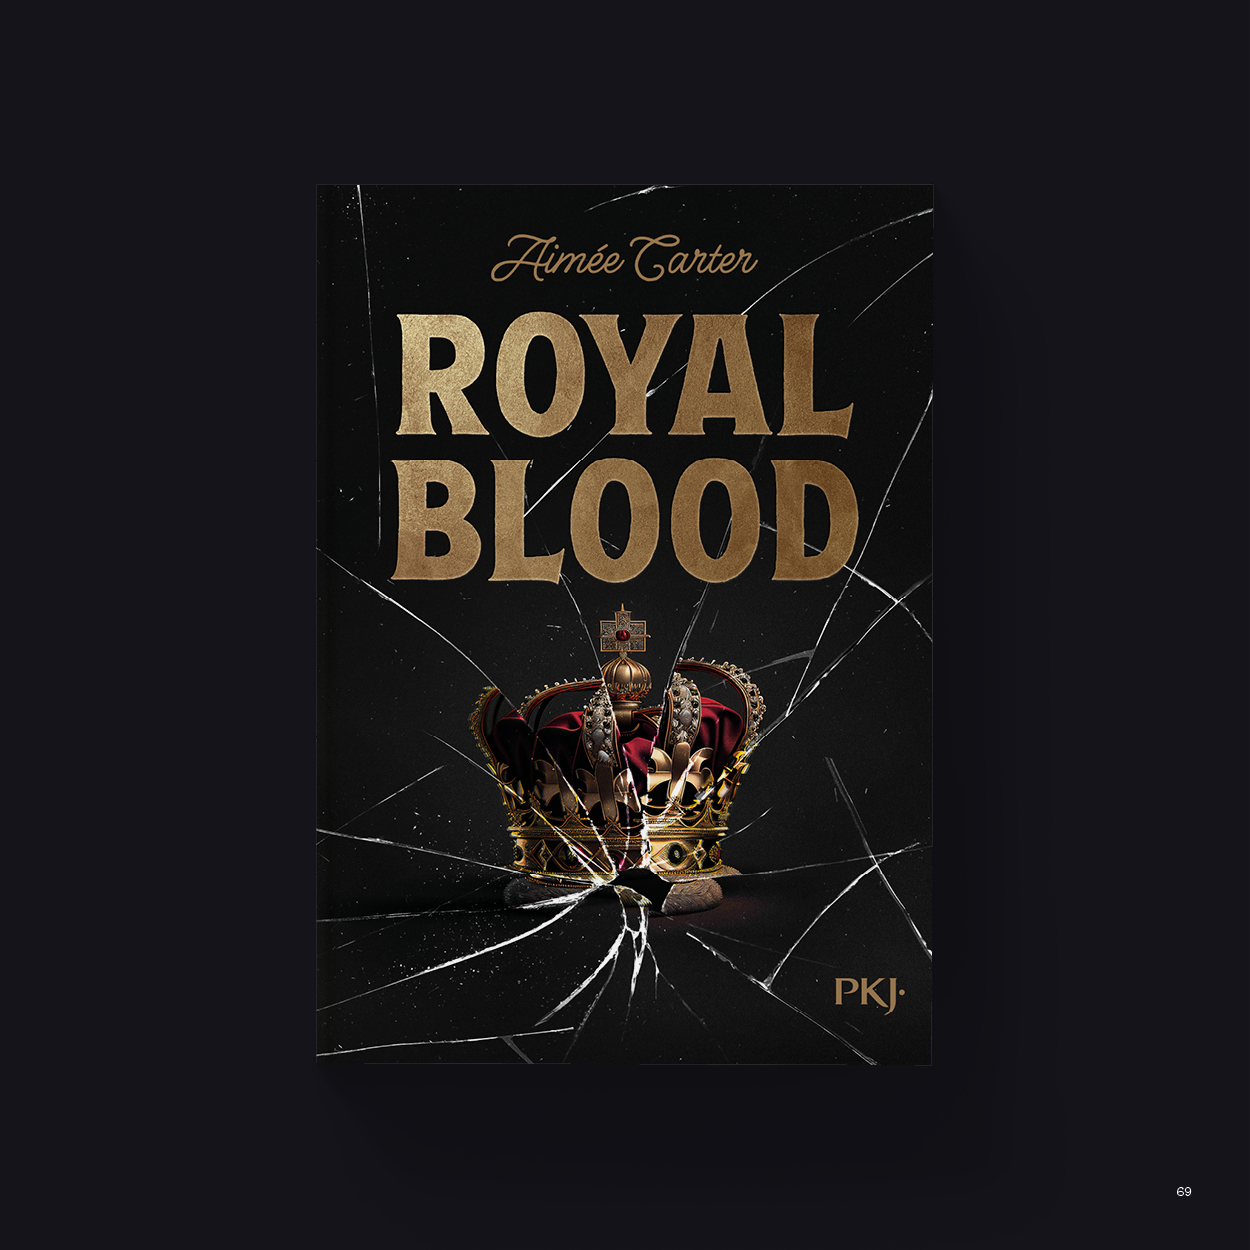 Vue_Royal_blood_69